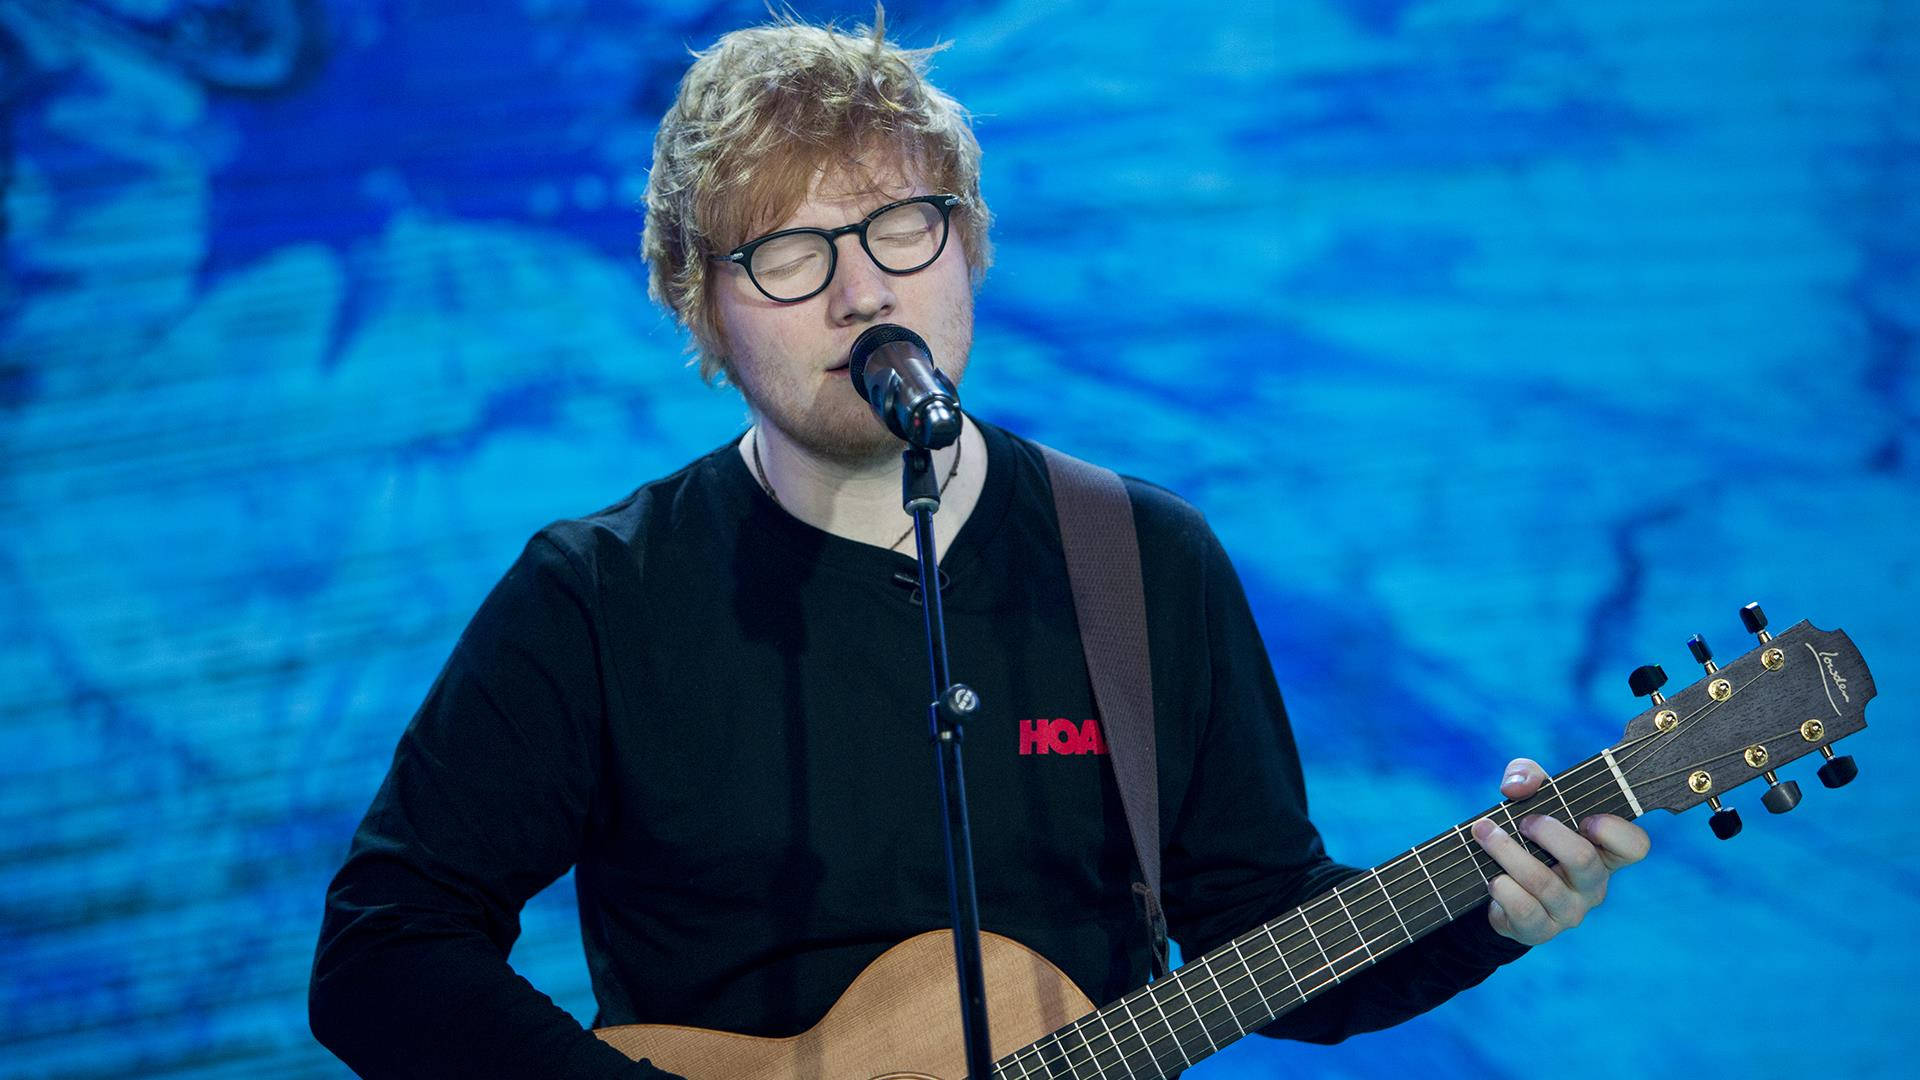 Ed Sheeran revela detalles de su nuevo sencillo “Eyes Closed”